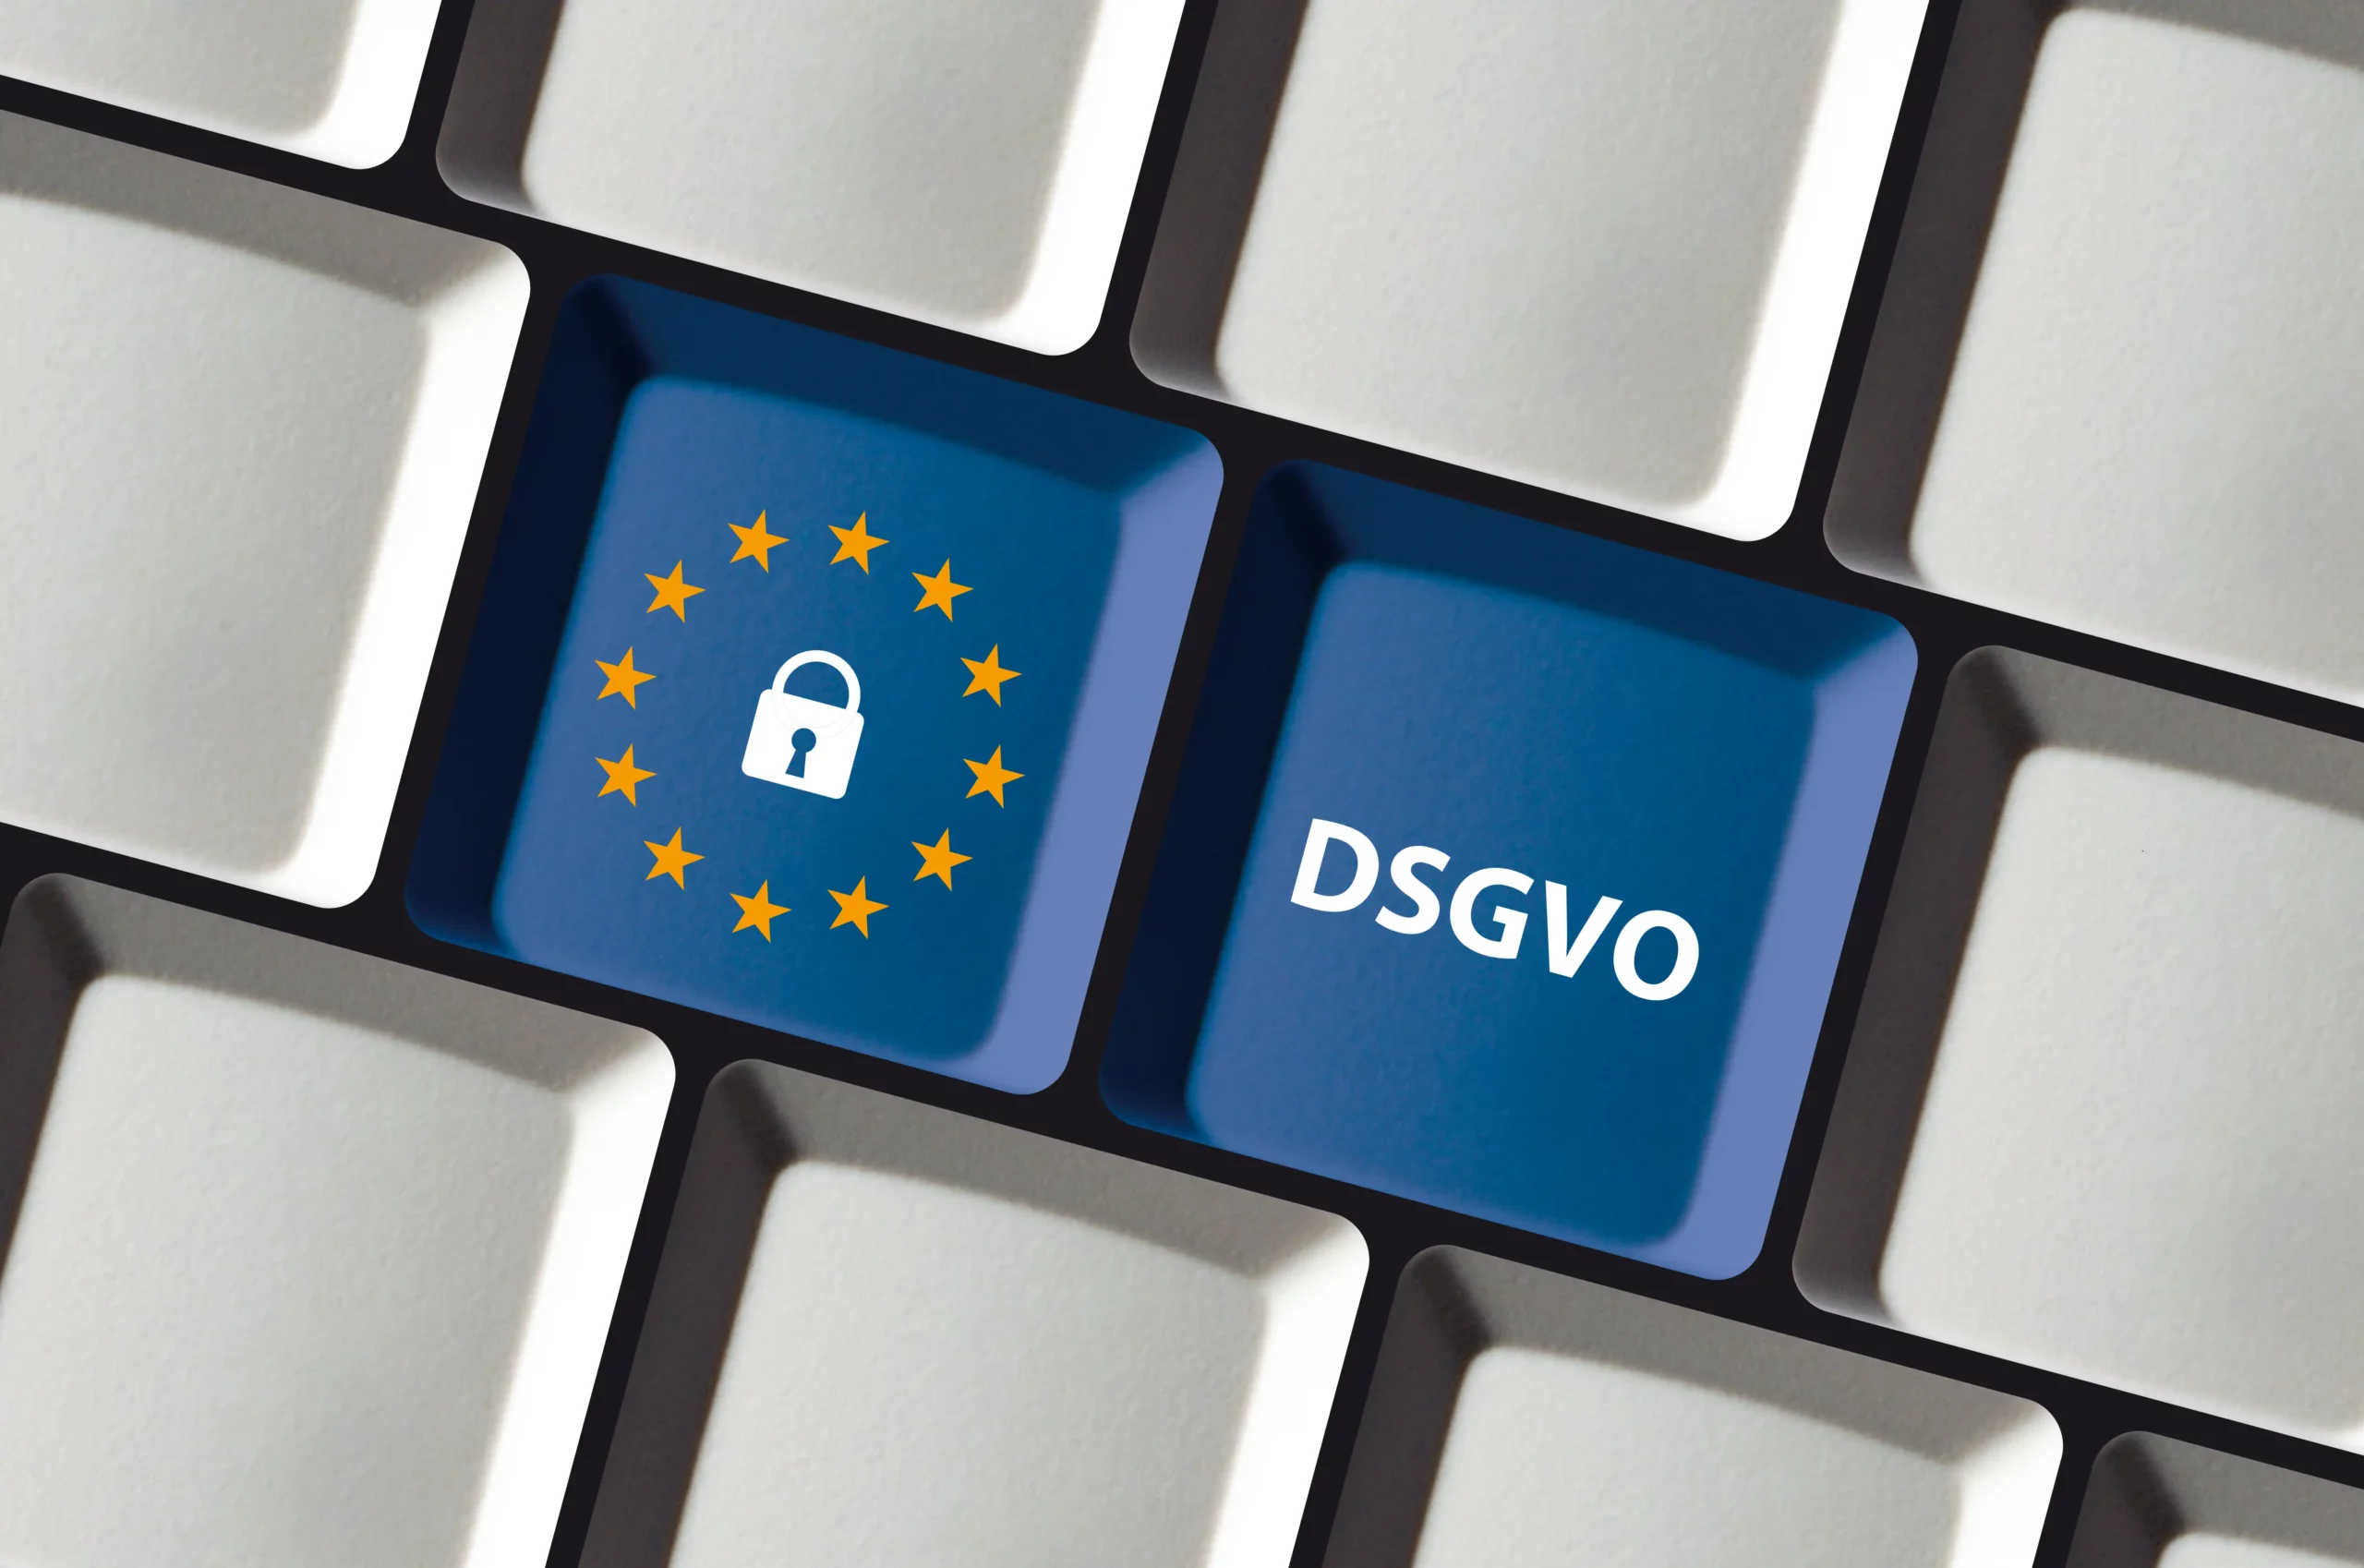 AV-Vertrag: Ein wichtiger Teil der DSGVO und Bestandteil für Dienstleister im digitalen Zeitalter